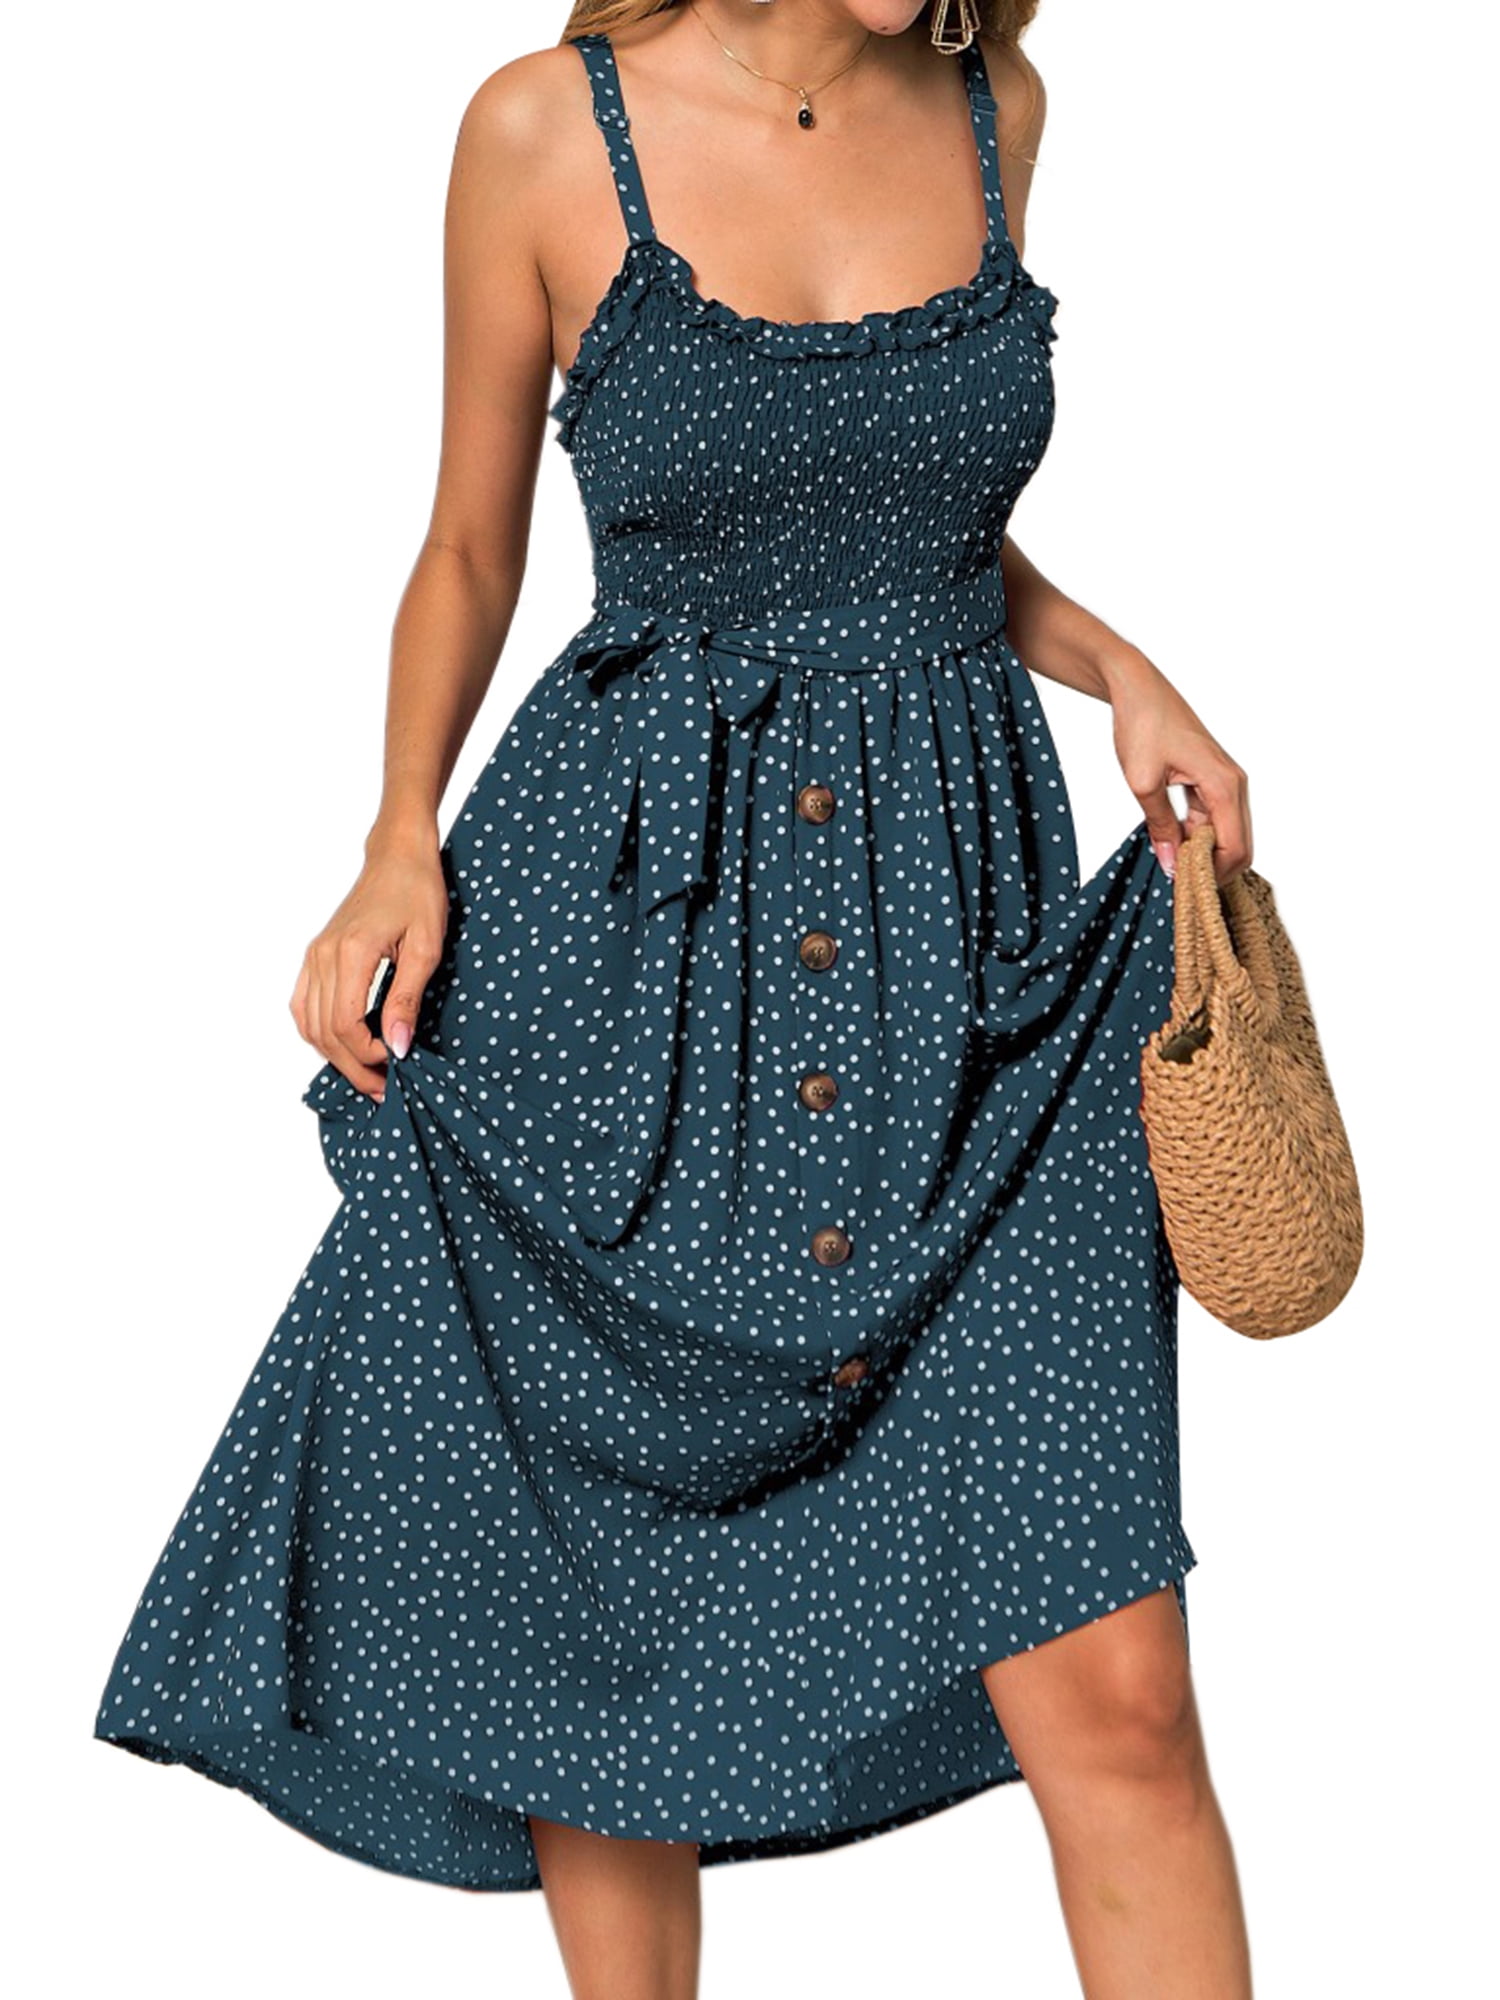 Womens Summer Casual Boho Sundress Polka Dot Sleeveless Flowy Midi Dresses ORT Cute Summer Dresses for Women 